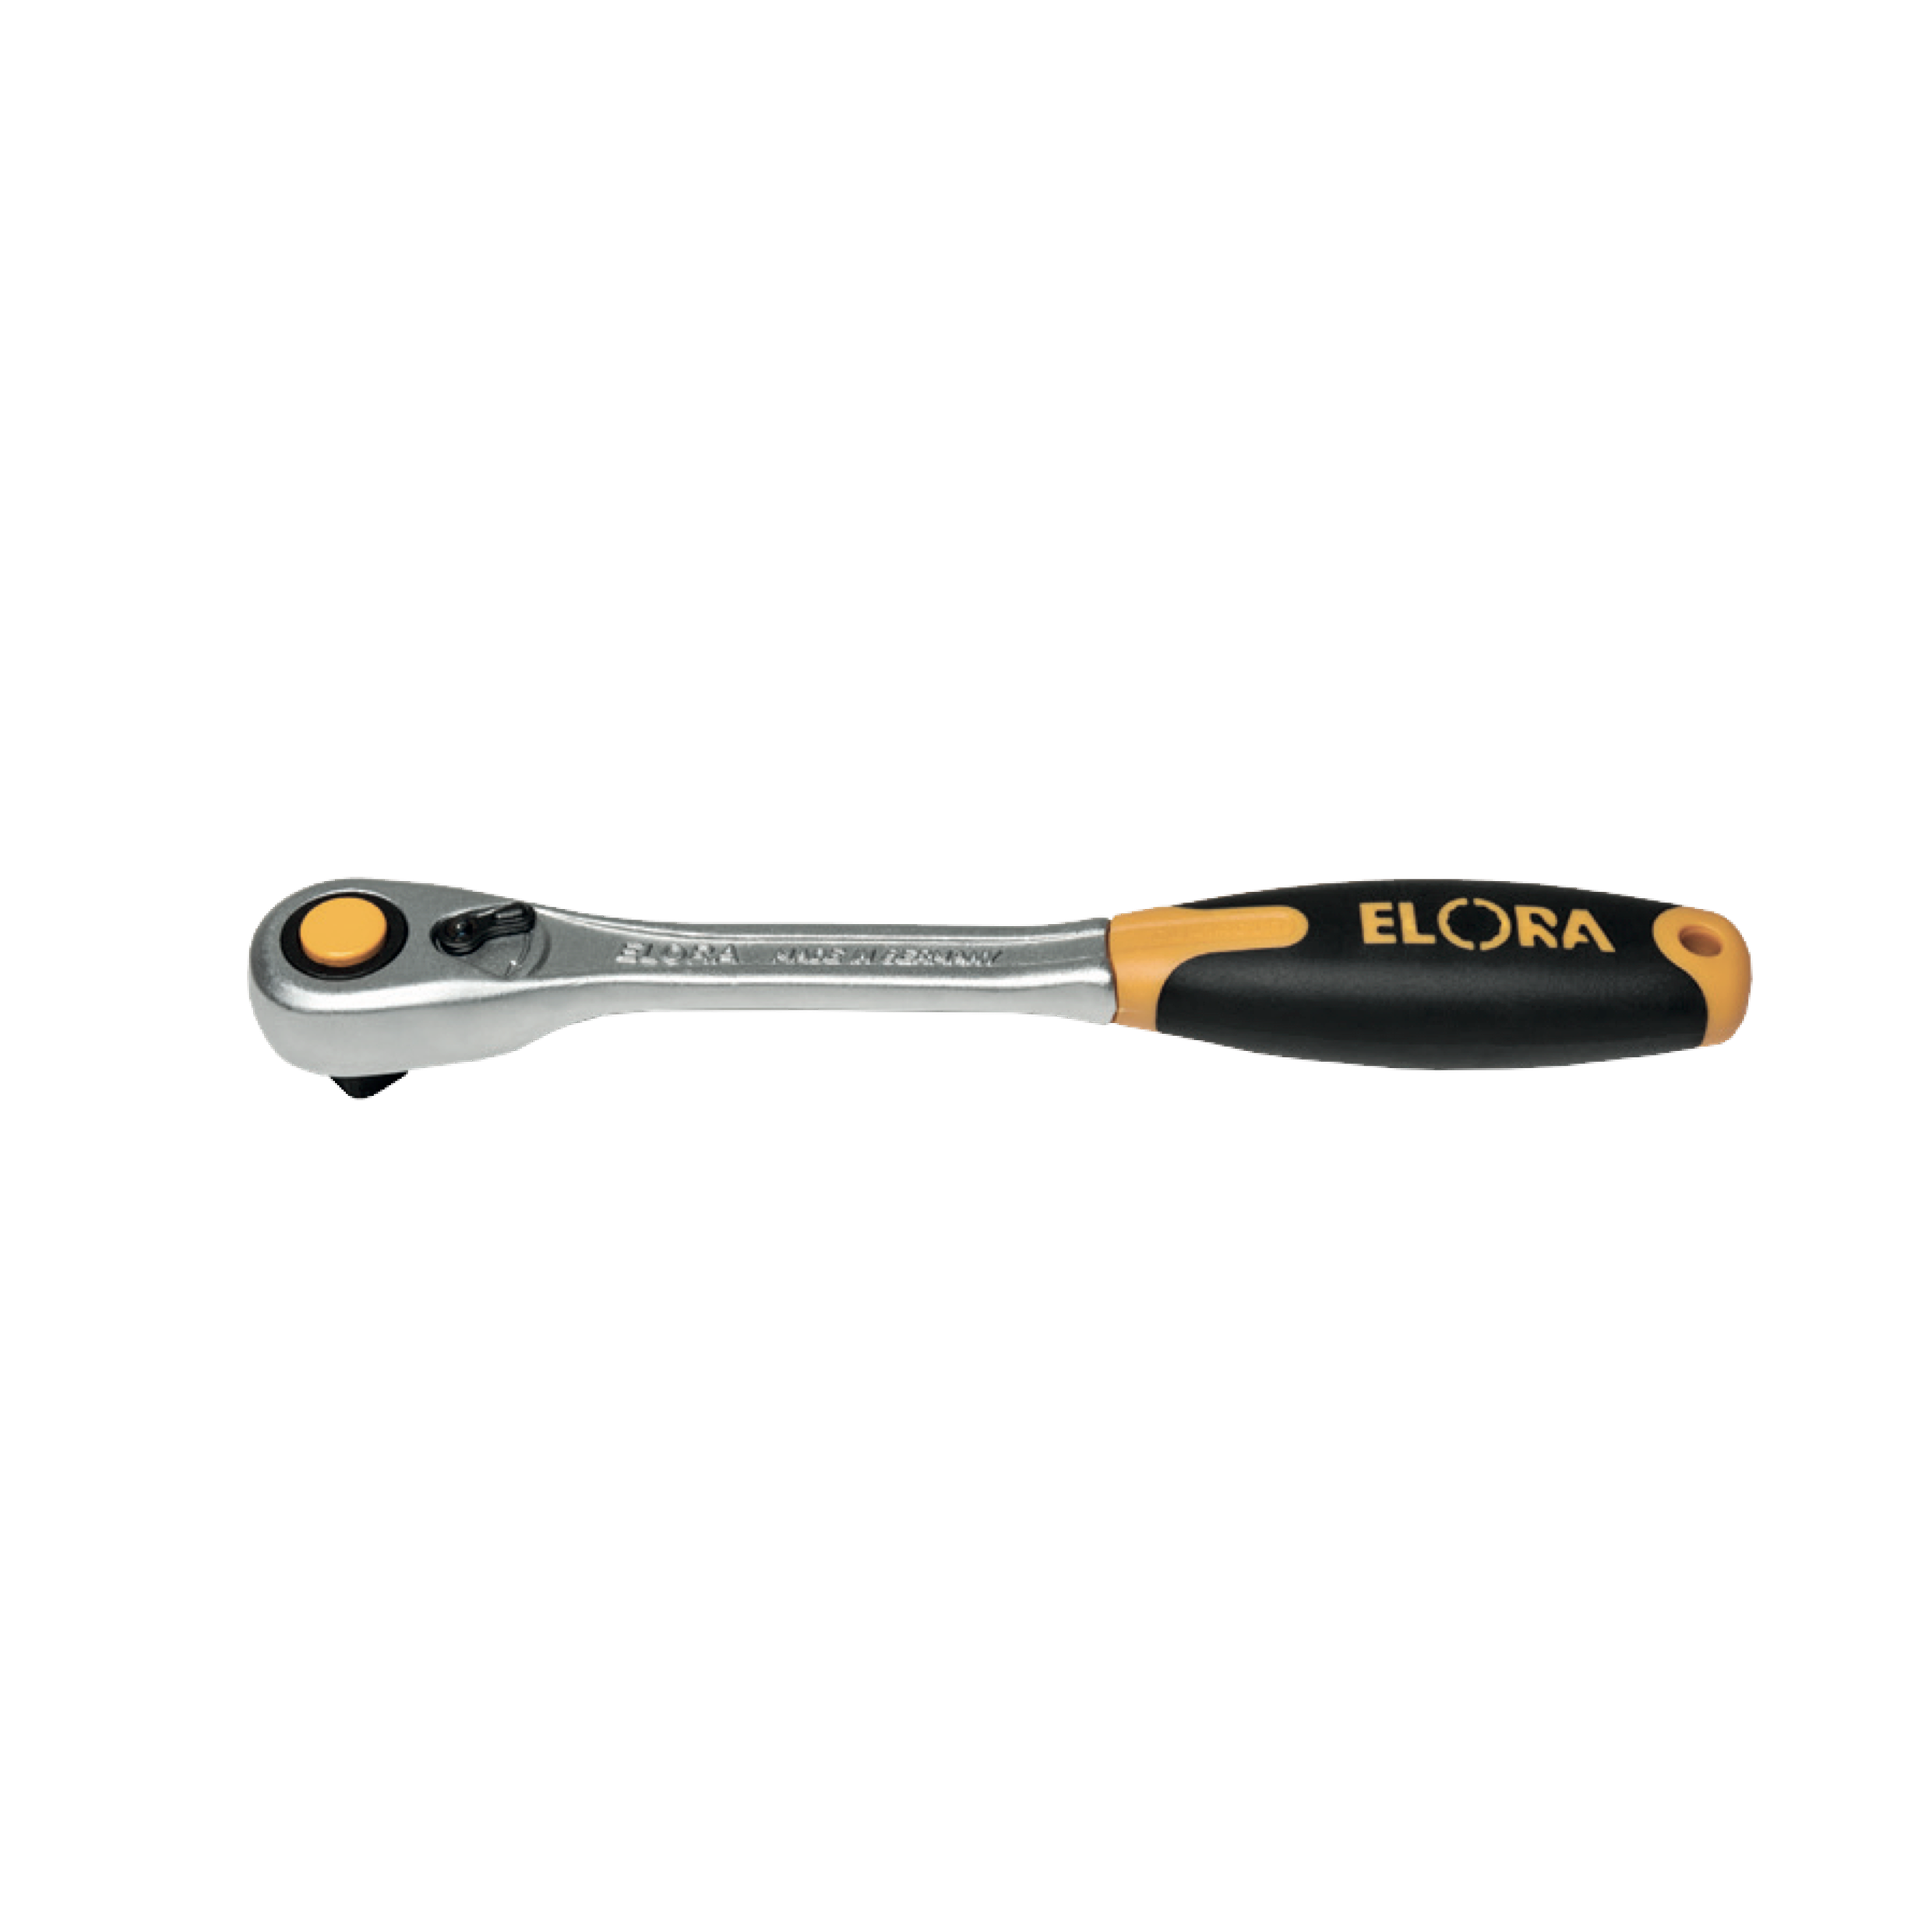 ELORA 770-LE1K Repair Kit Reversible Ratchet 1/2" (ELORA Tools) - Premium Reversible Ratchet from ELORA - Shop now at Yew Aik.